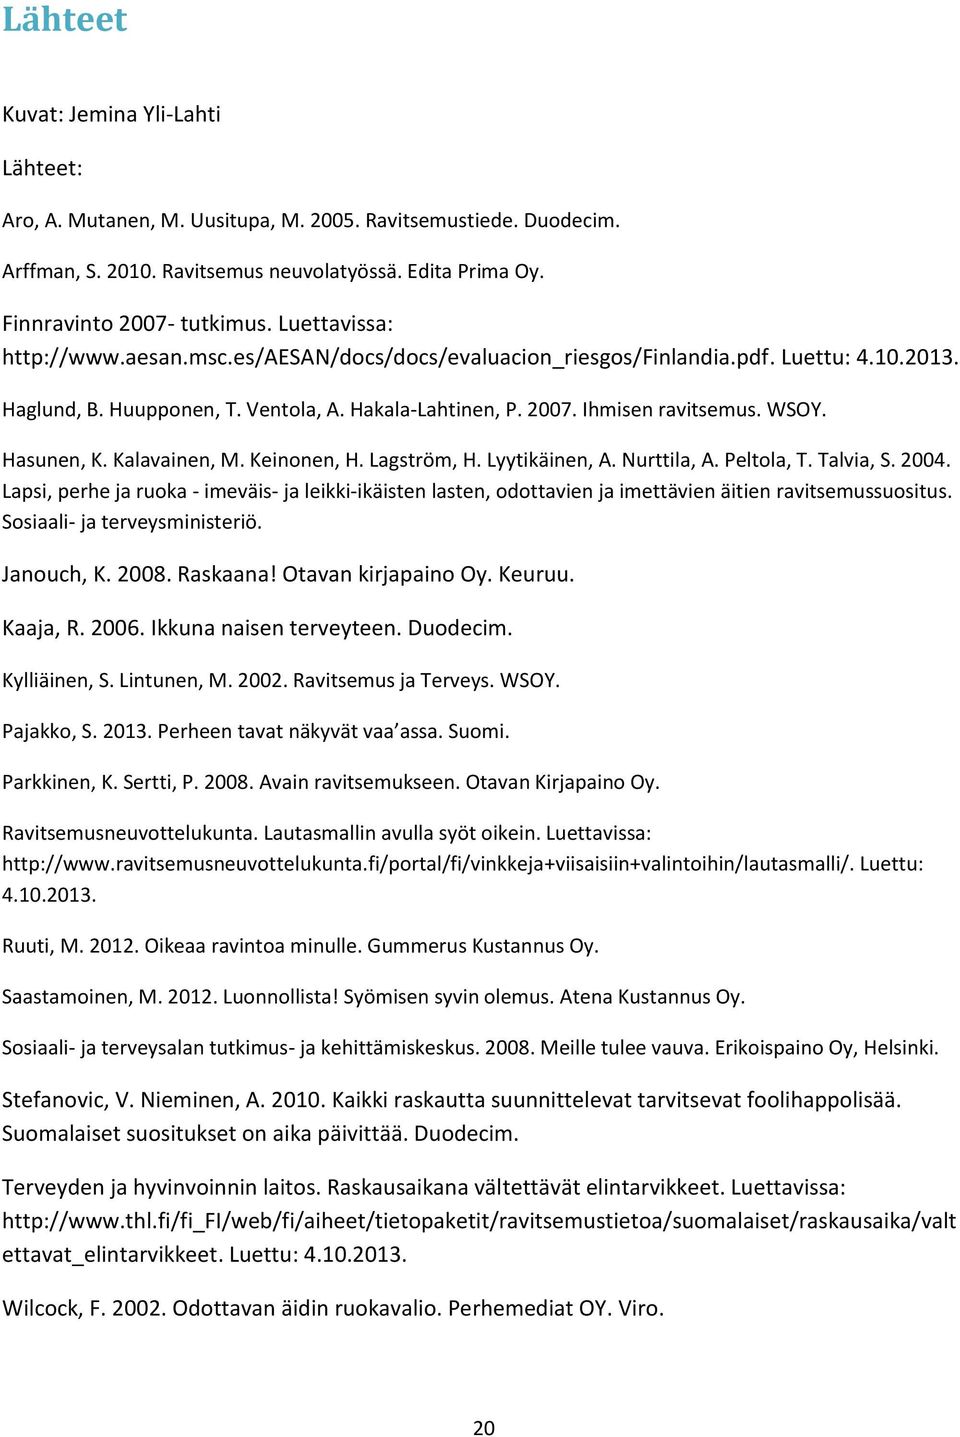 Hasunen, K. Kalavainen, M. Keinonen, H. Lagström, H. Lyytikäinen, A. Nurttila, A. Peltola, T. Talvia, S. 2004.